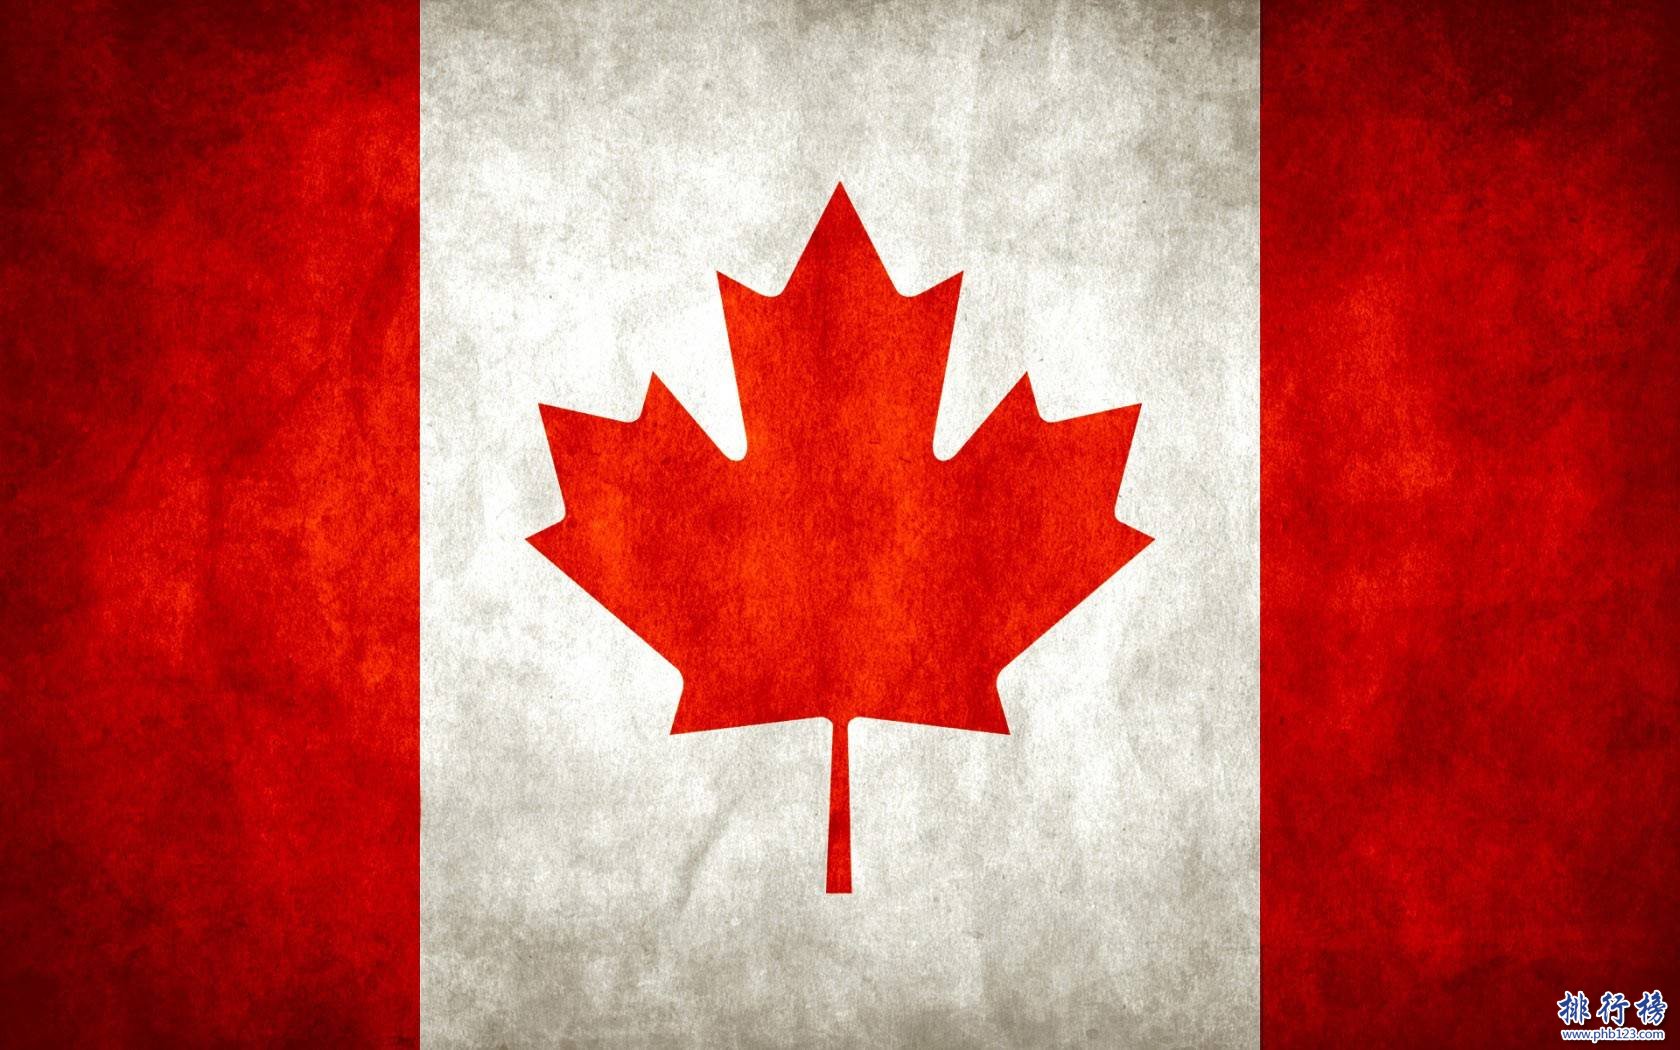 【加拿大人口2018总人数】加拿大人口世界排名2018